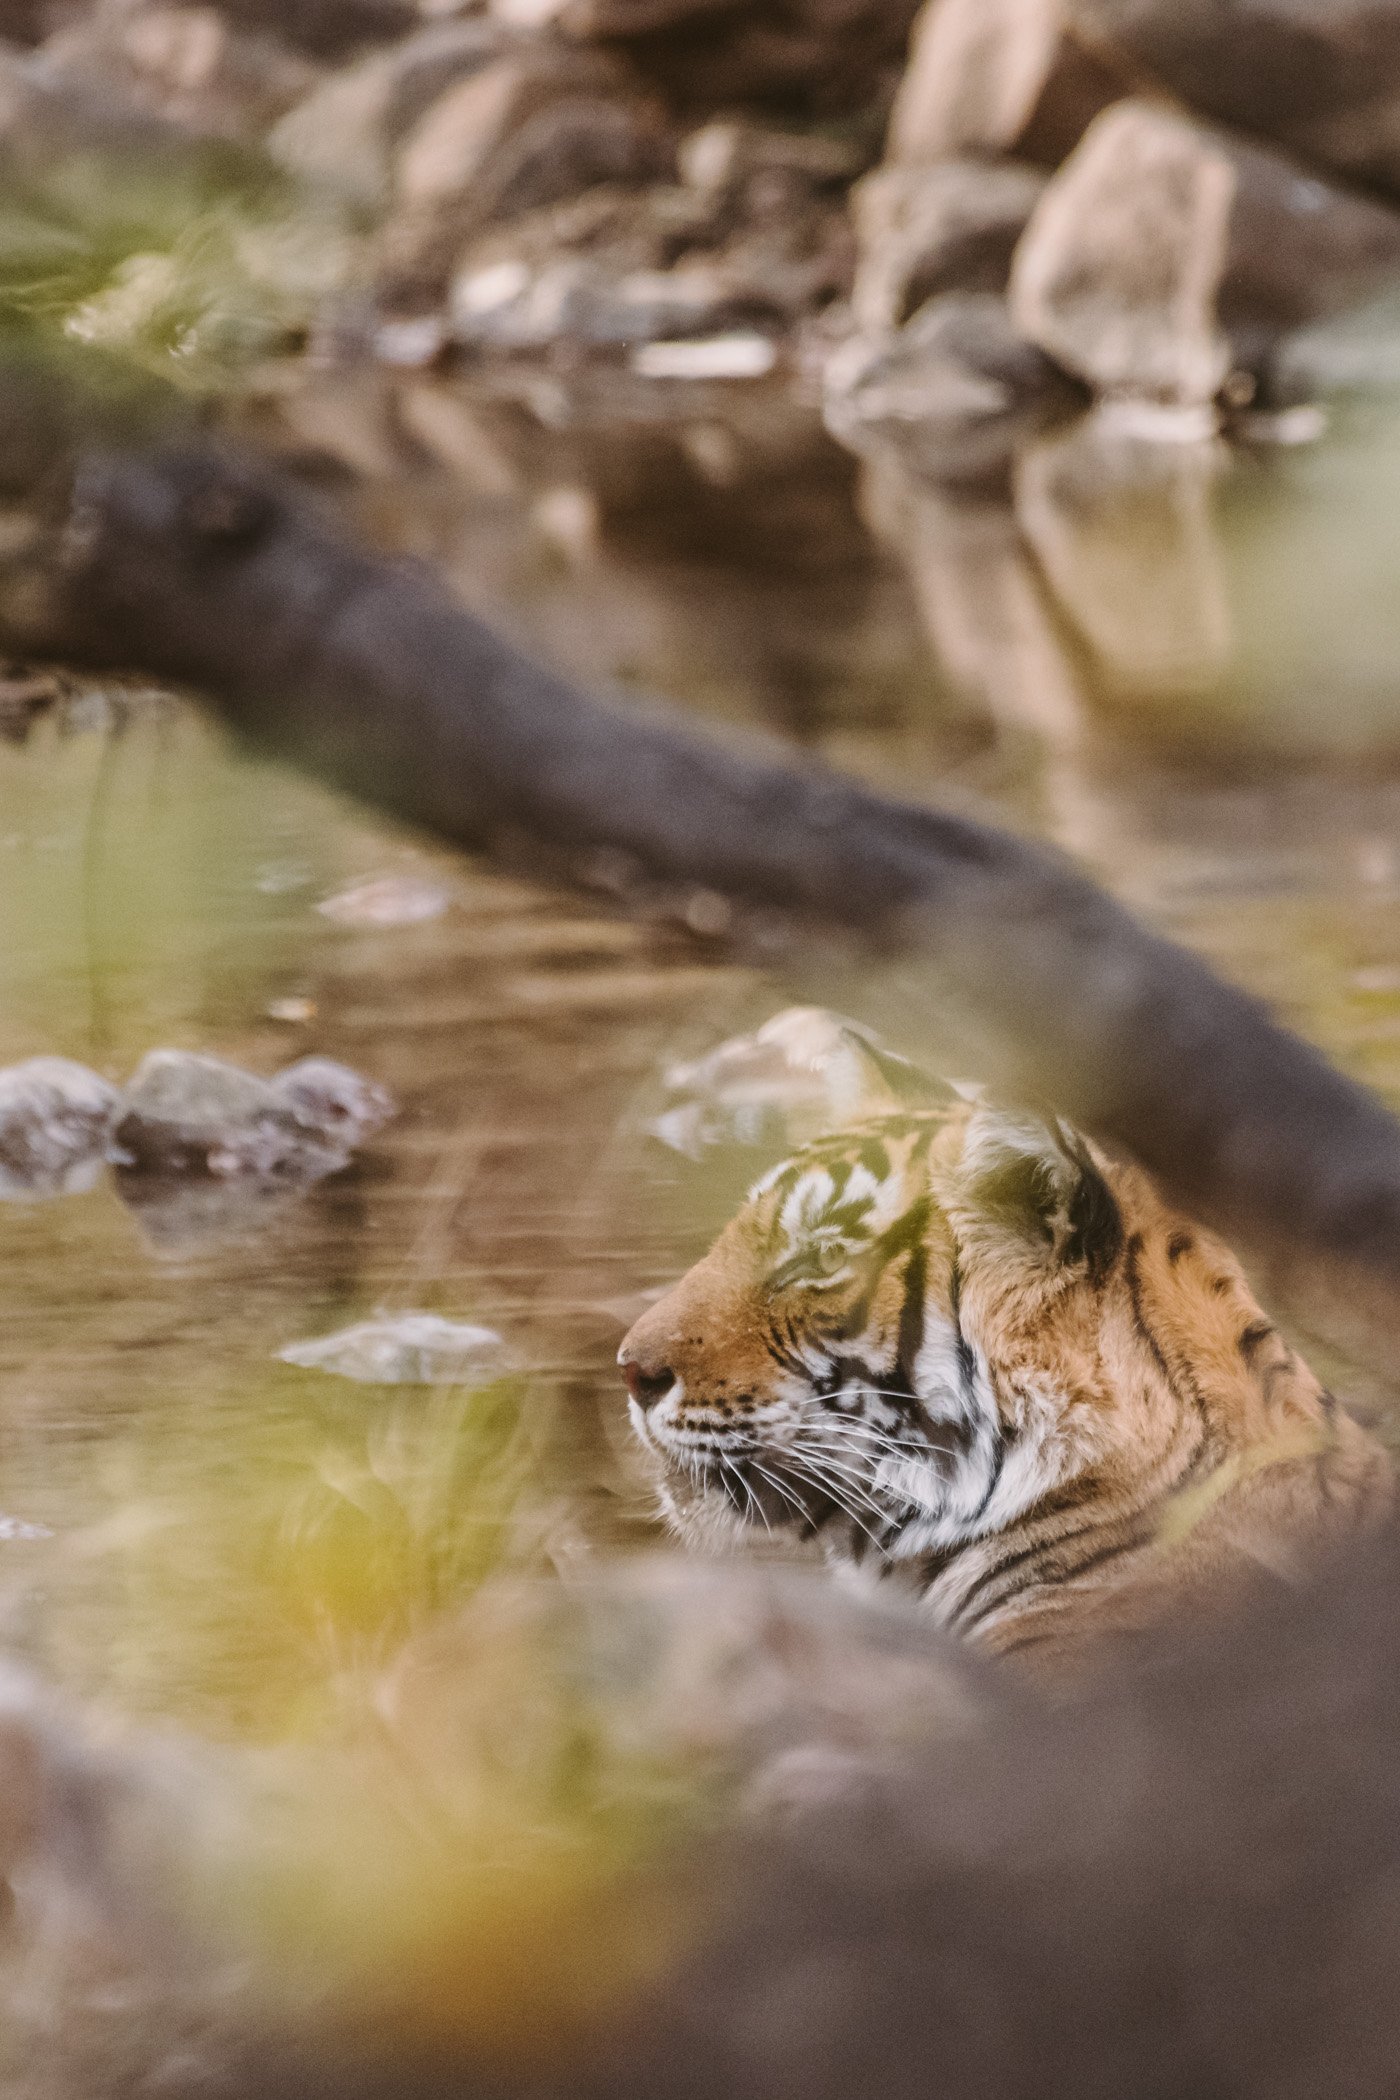 Tiger safari in Ranthambore National Park